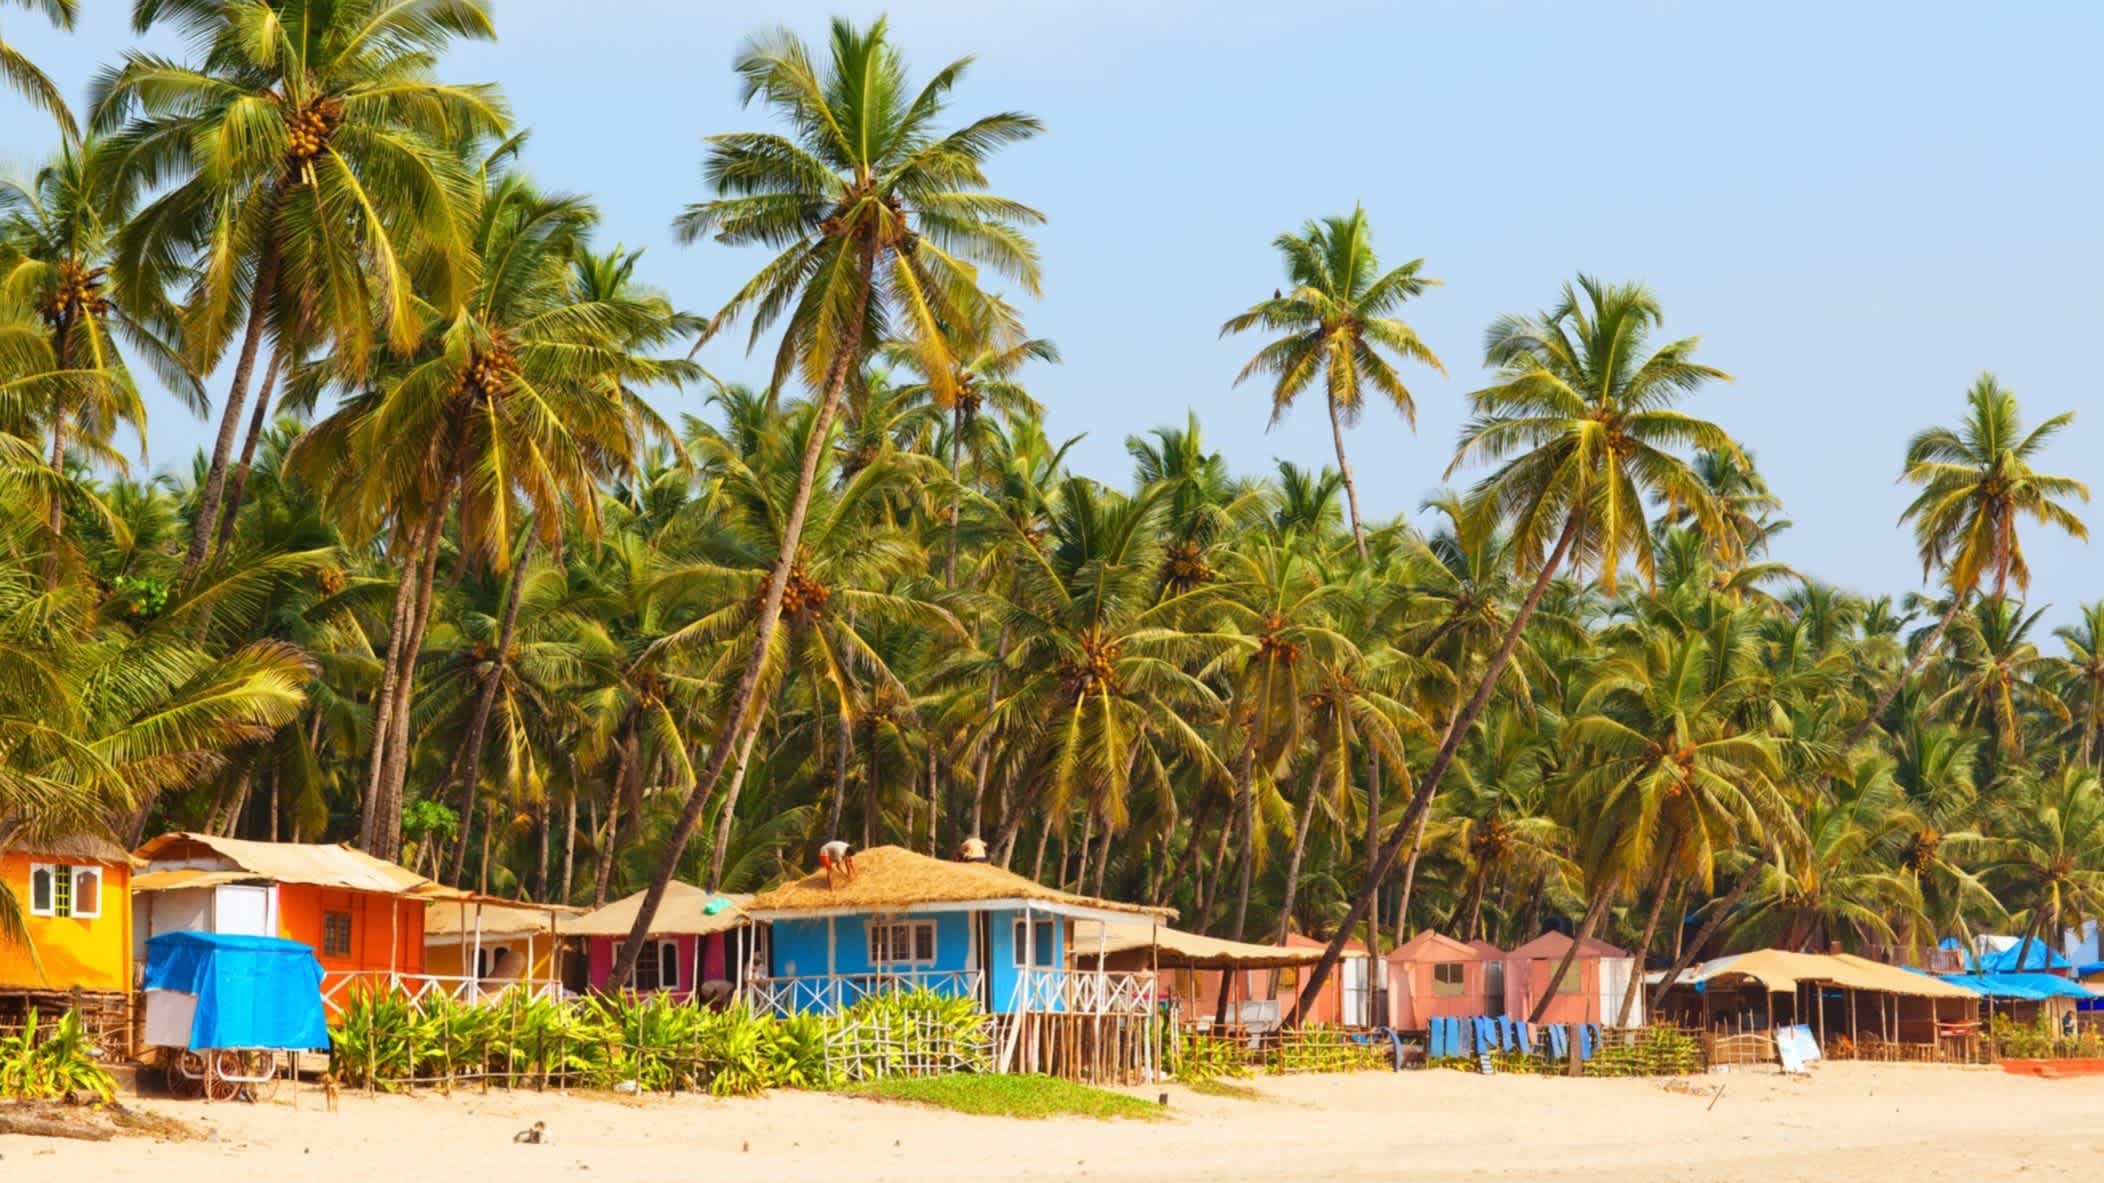 Maisons colorées sur la plage avec palmiers, à Palolem, à Goa, en Inde.